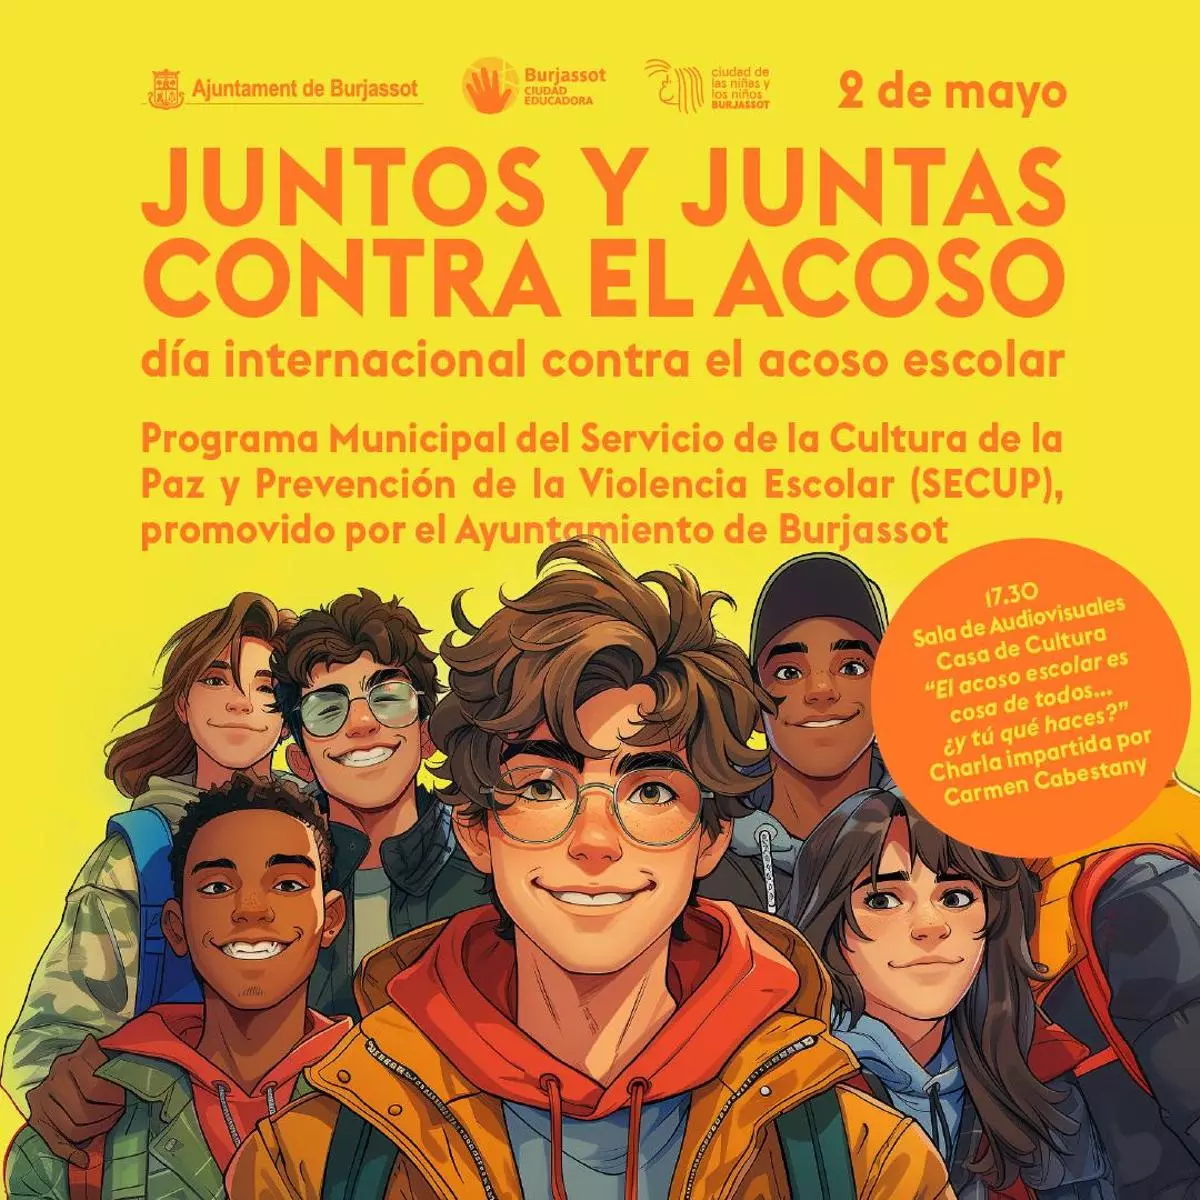 Burjassot conmemora el Día Internacional contra el Acoso Escolar con diferentes acciones de concienciación social